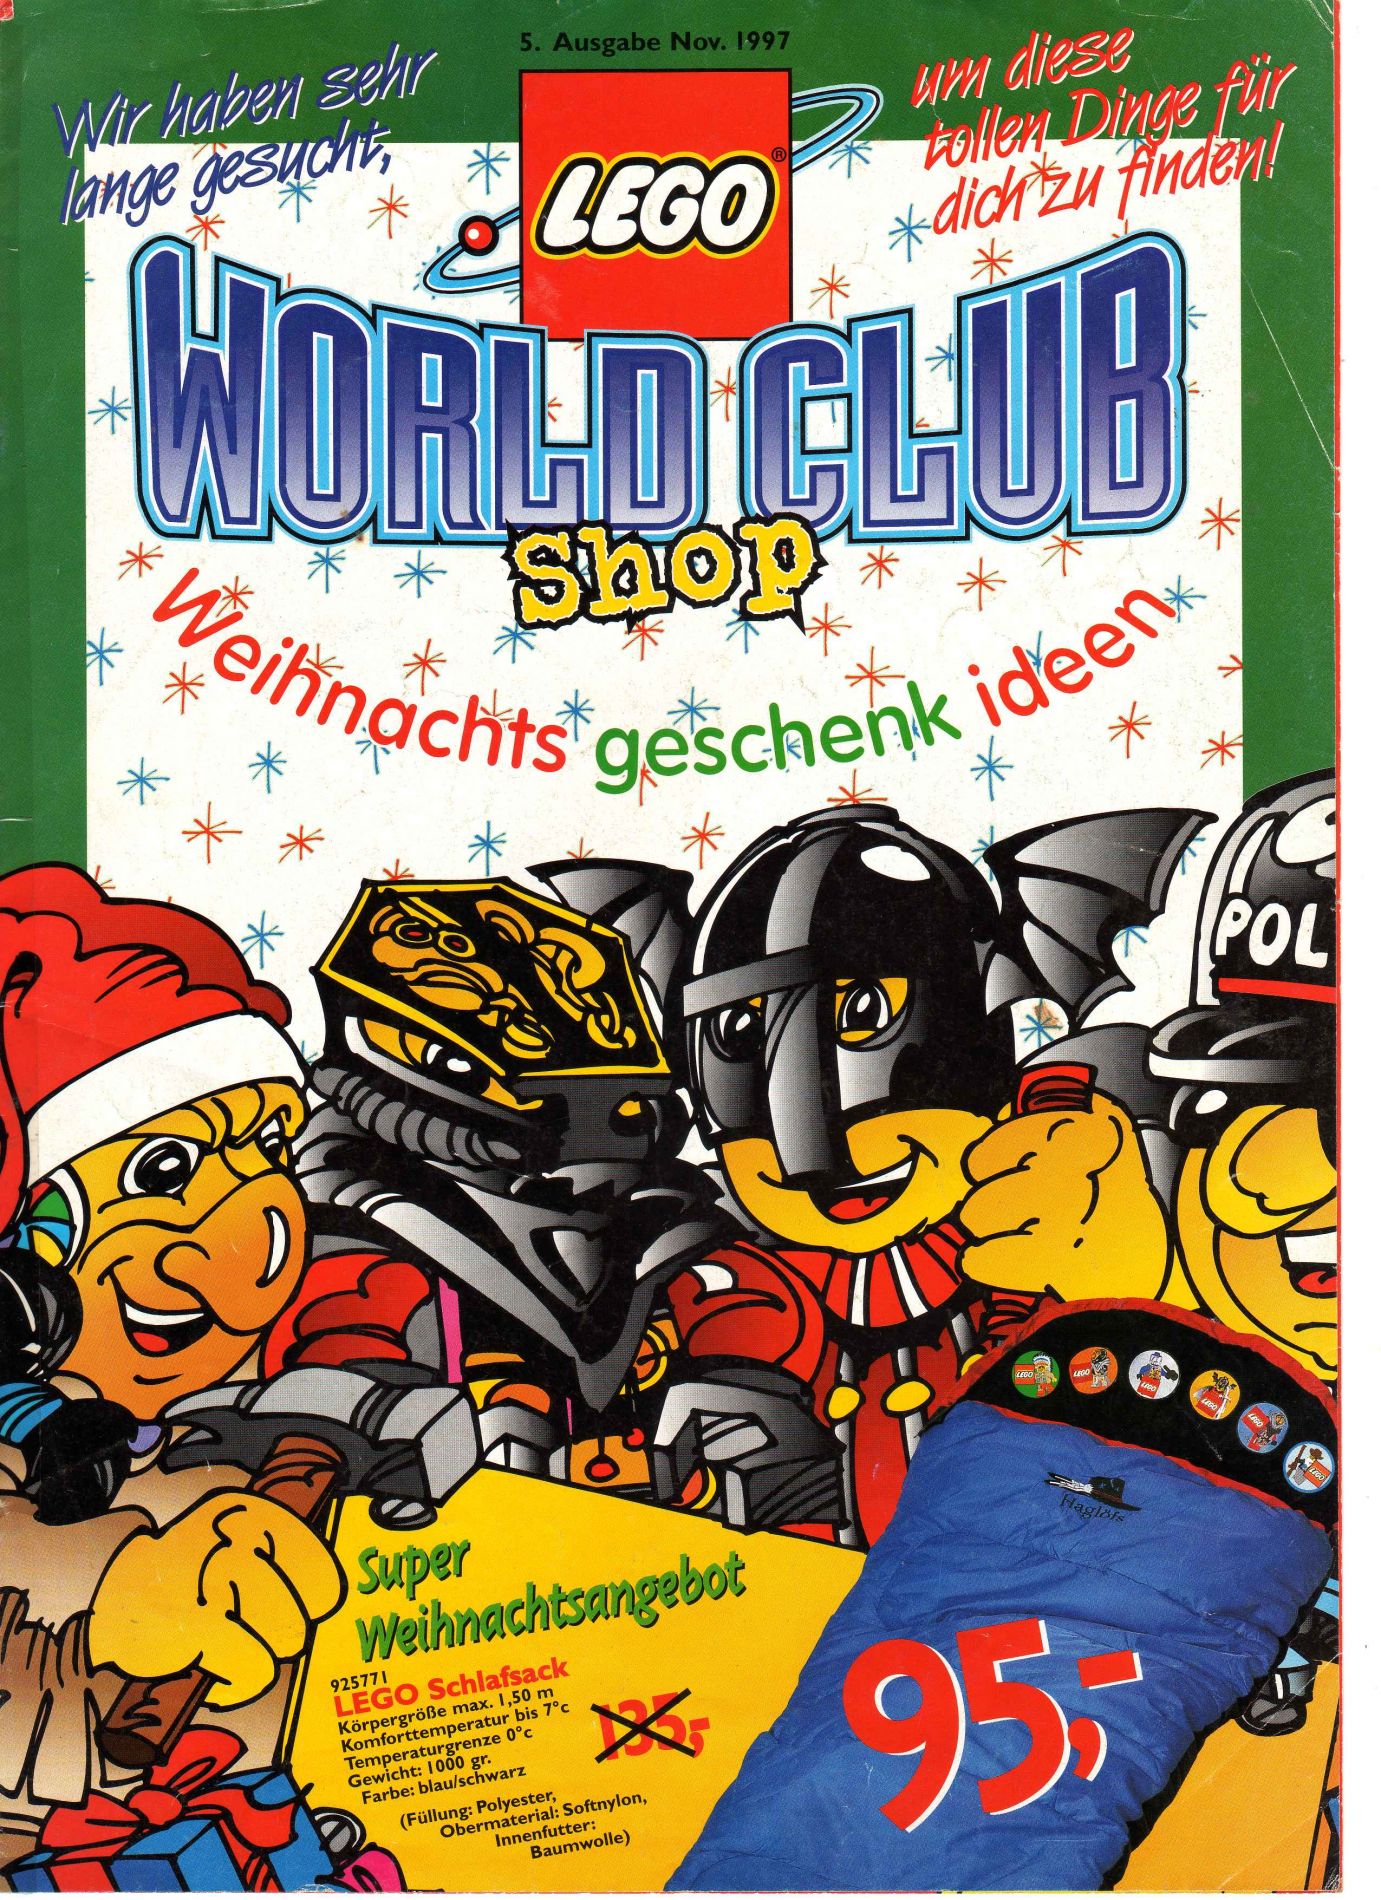 LEGO World Club 1997 Issue 5